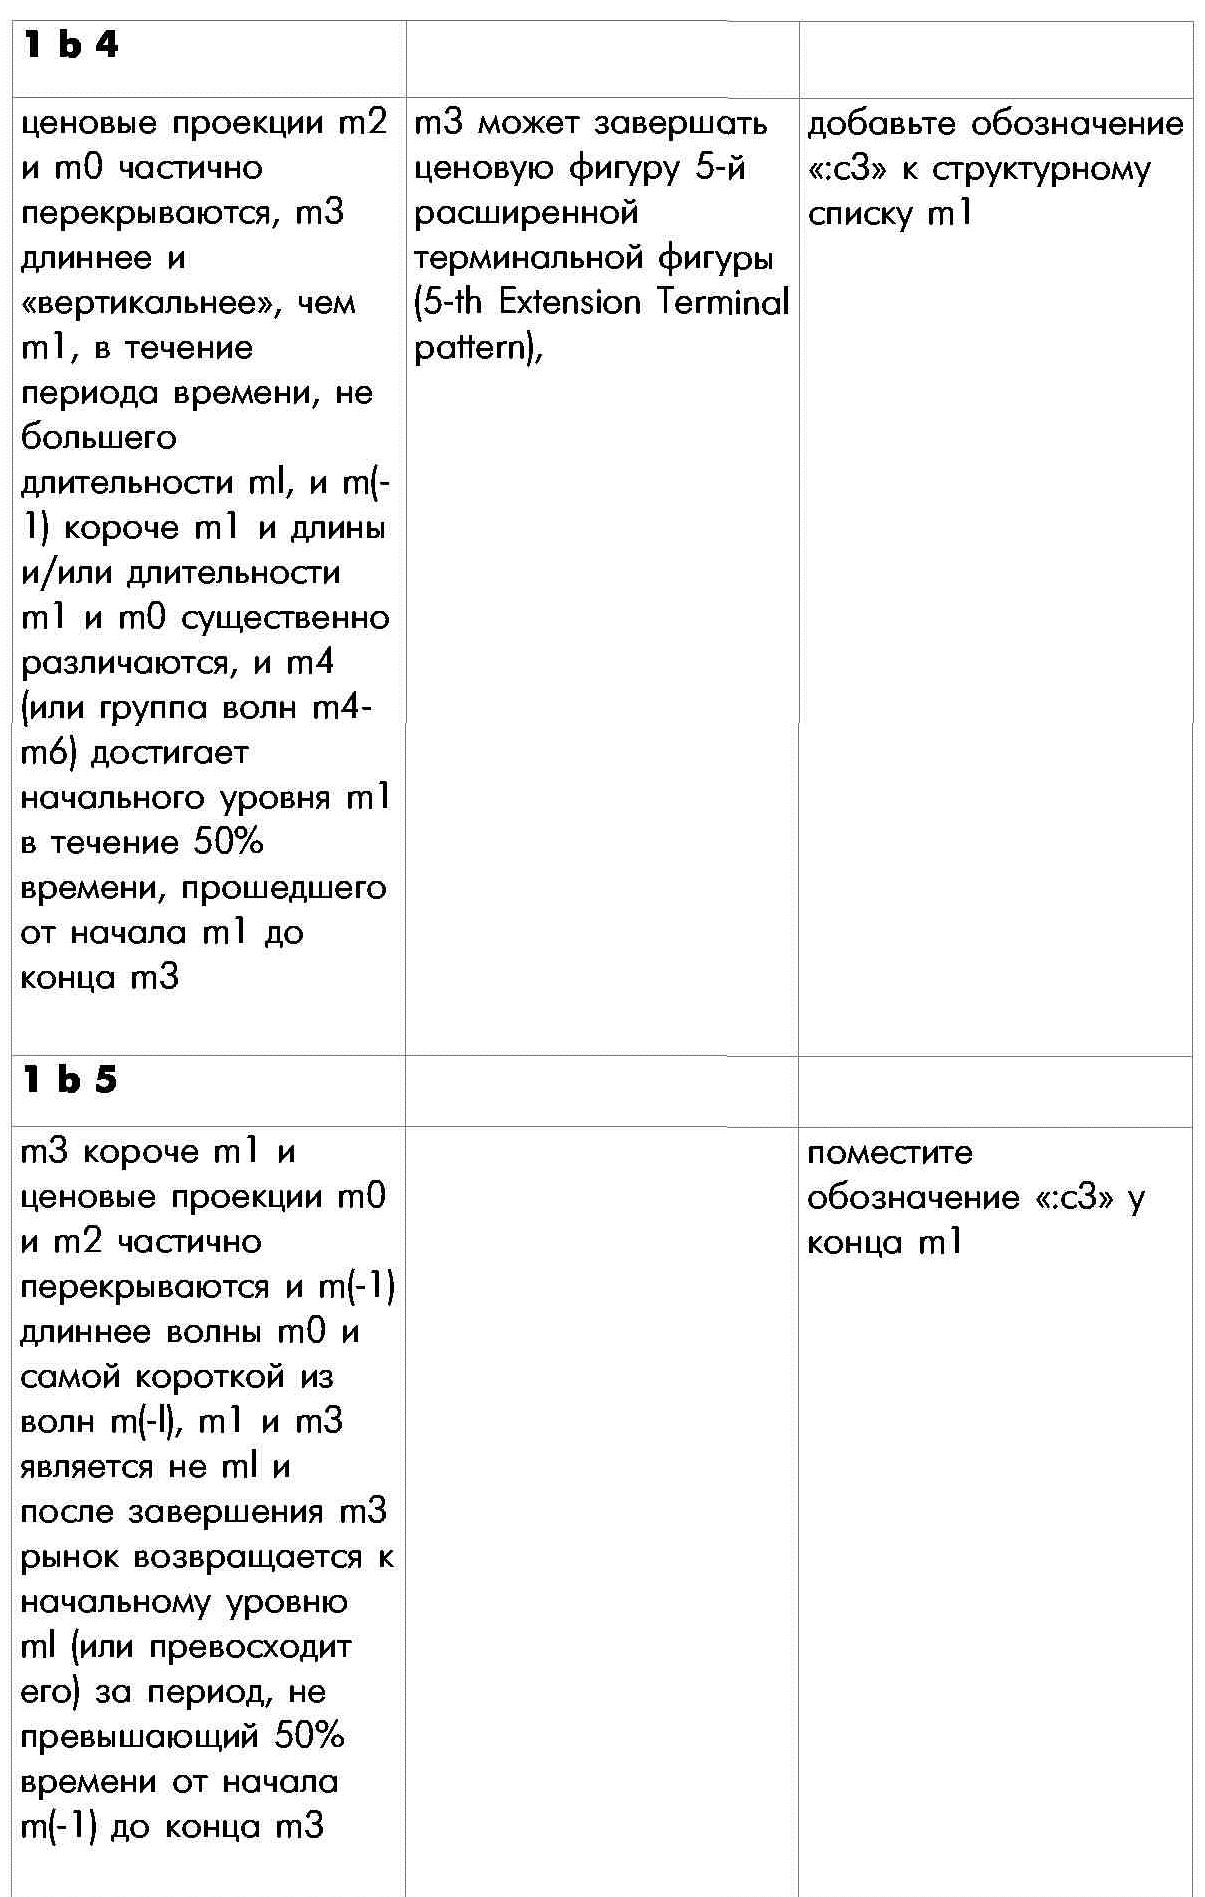 Правило 1 определения внутренней структуры моноволны пятая часть таблицы